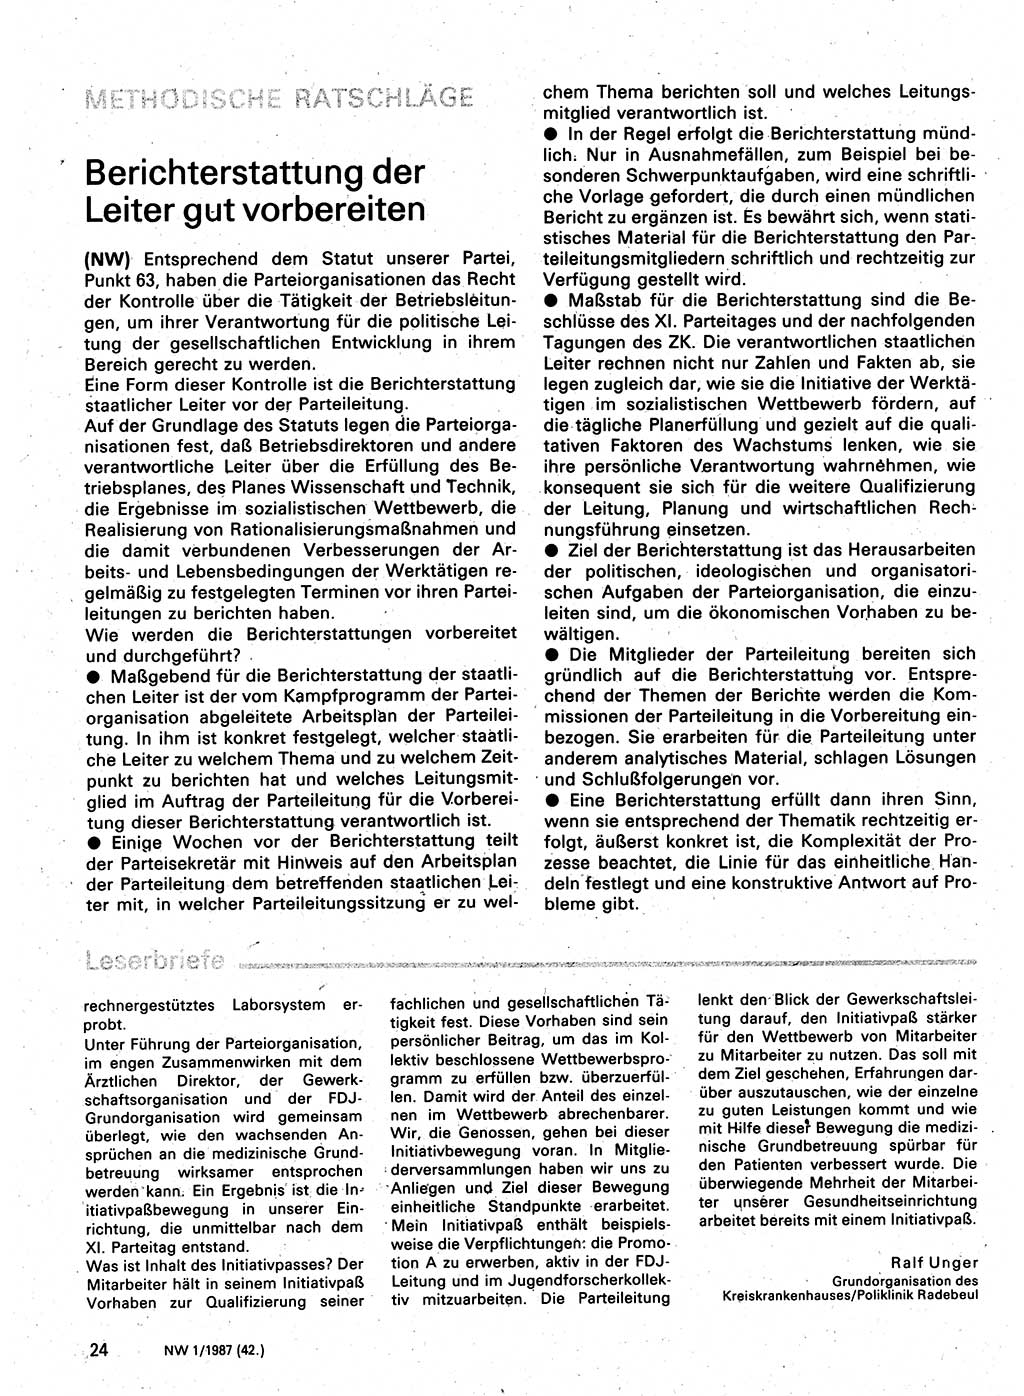 Neuer Weg (NW), Organ des Zentralkomitees (ZK) der SED (Sozialistische Einheitspartei Deutschlands) für Fragen des Parteilebens, 42. Jahrgang [Deutsche Demokratische Republik (DDR)] 1987, Seite 24 (NW ZK SED DDR 1987, S. 24)